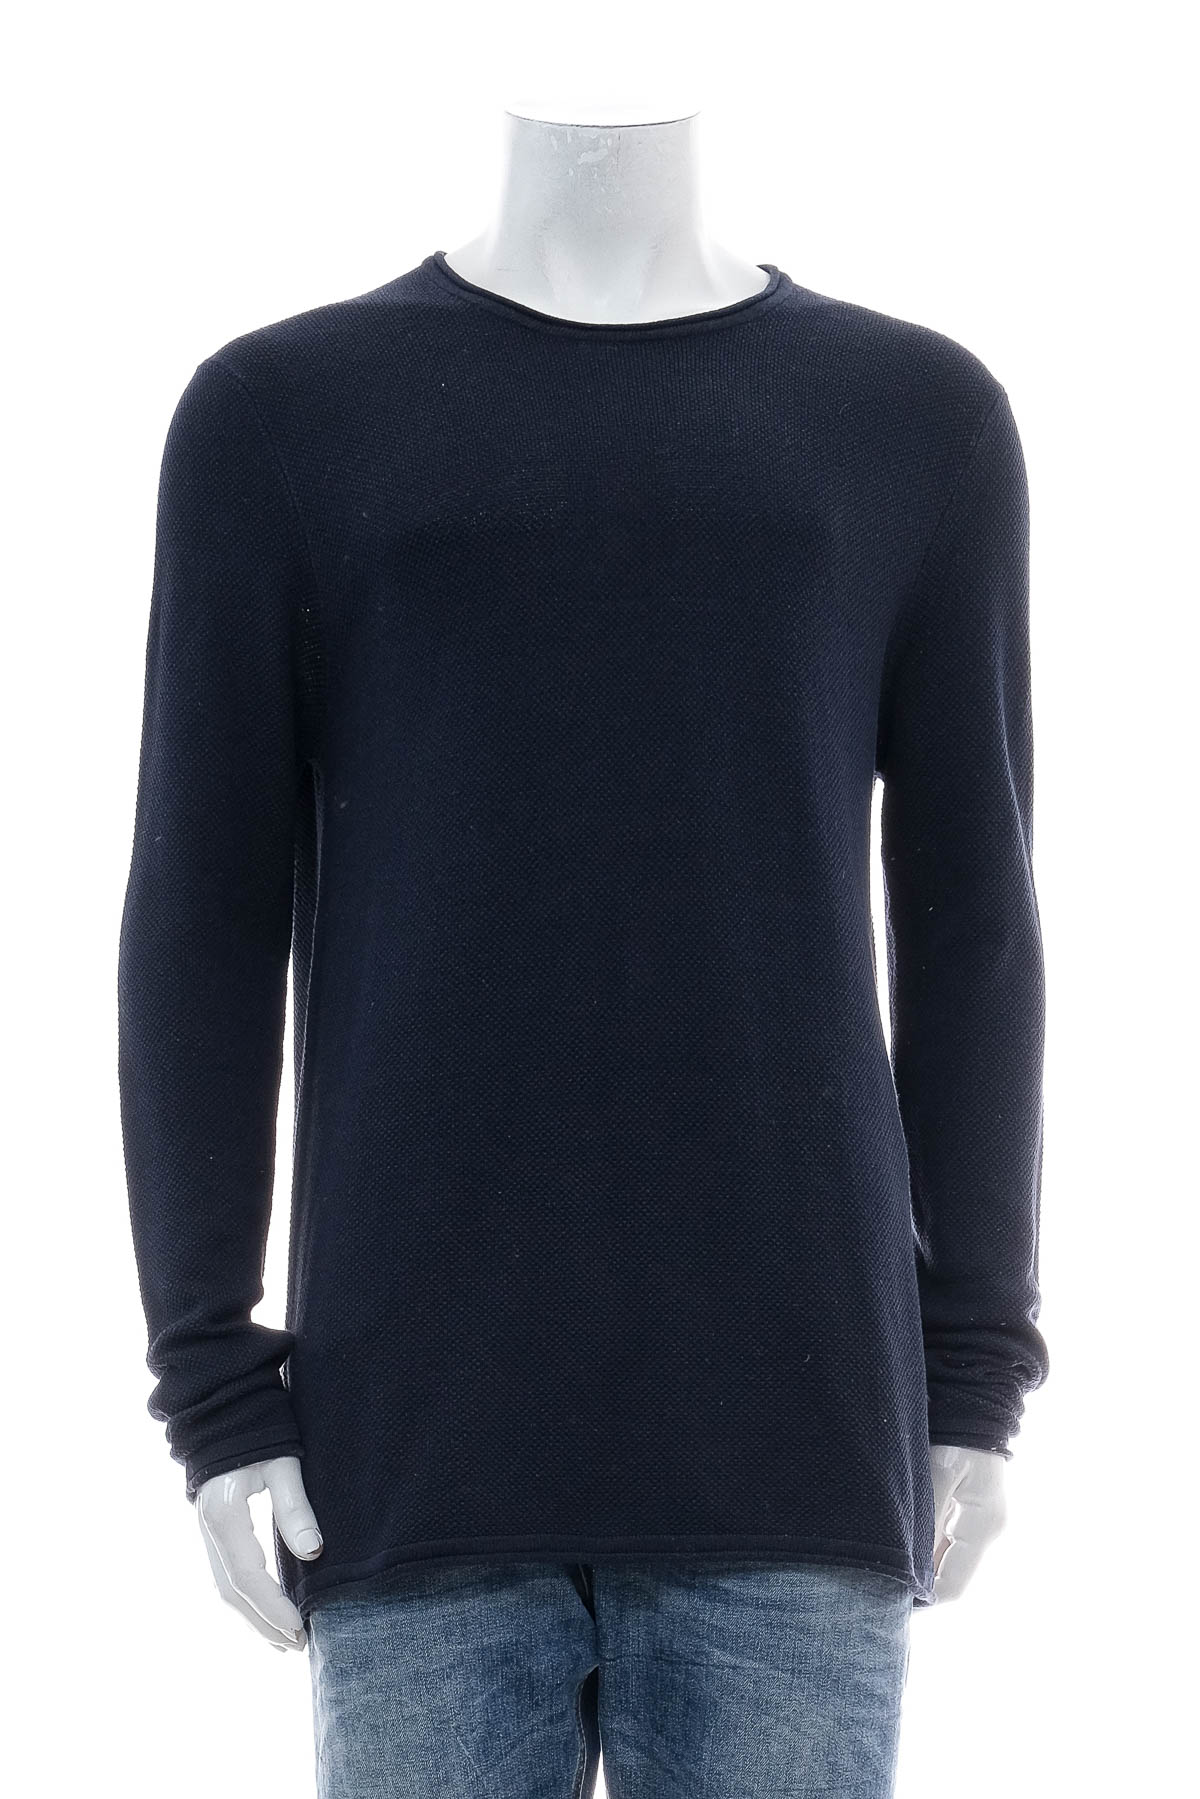 Men's sweater - Identic - 0